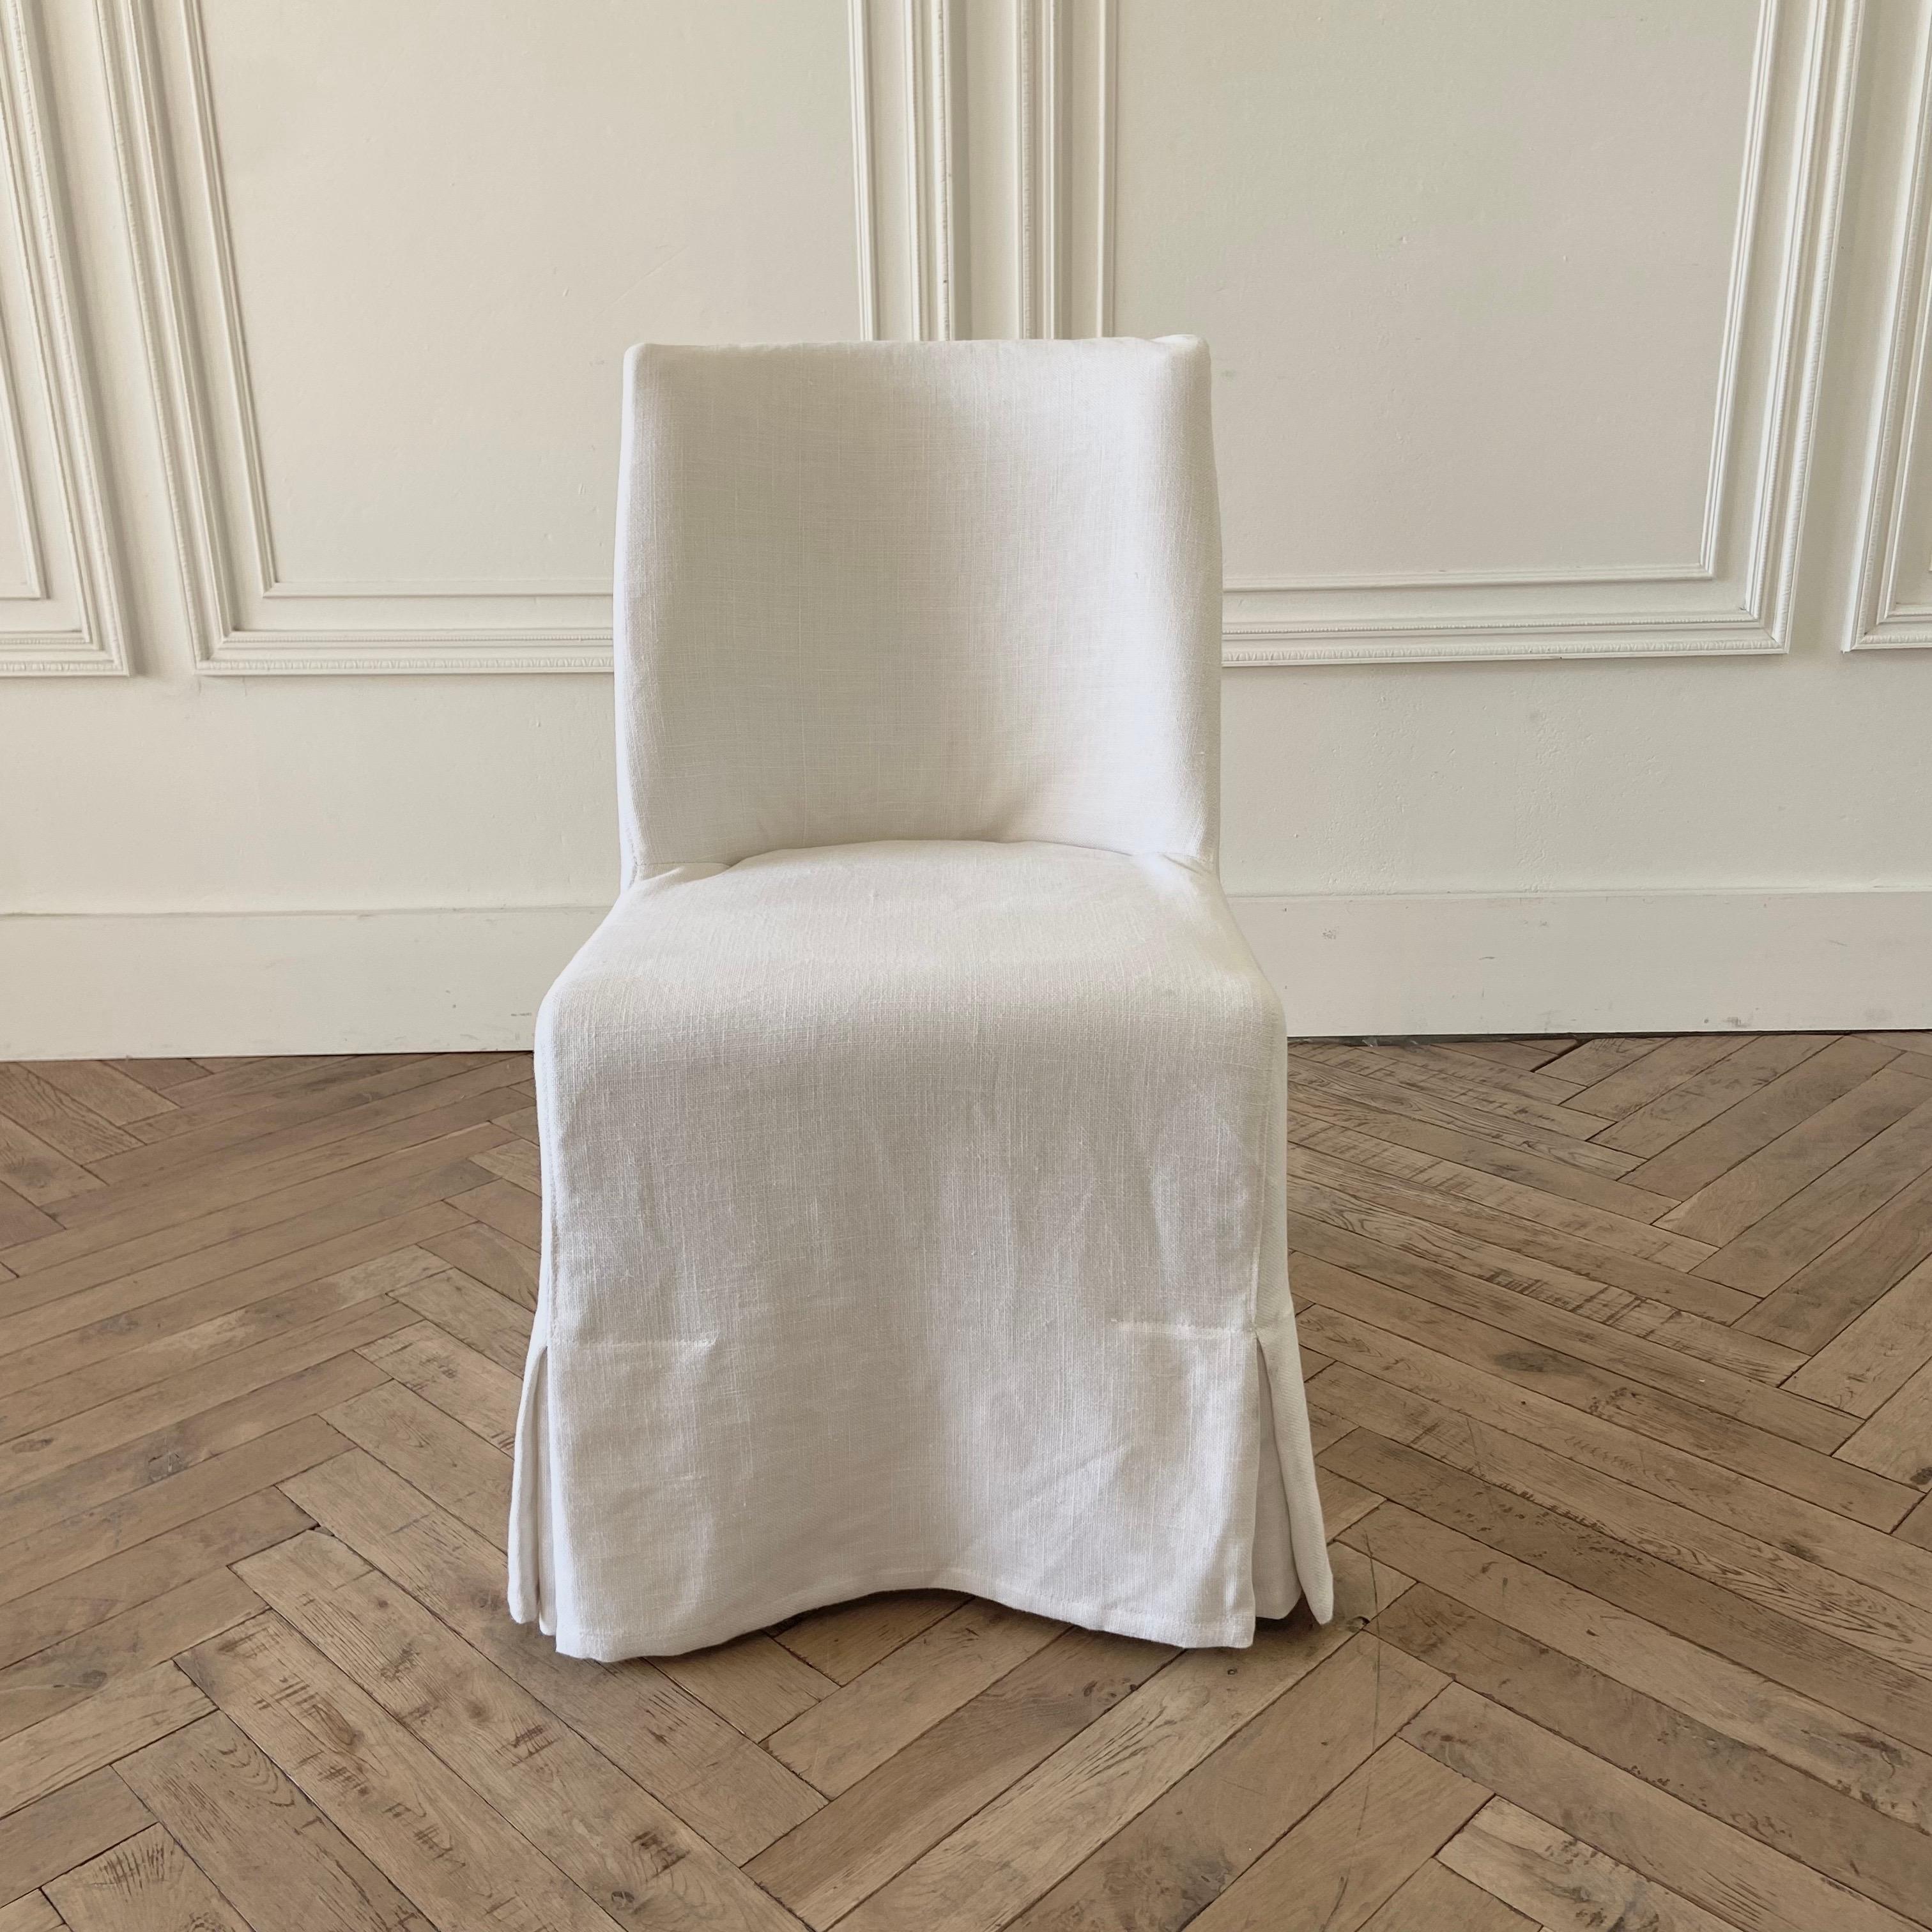 Esszimmerstuhl mit weißem Leinenbezug
Einfacher, schwerer, mit weißem Leinen bezogener Pfarrerstuhl.
Falls nicht vorrätig, bitte 2-4 Wochen warten.
Größe: 19